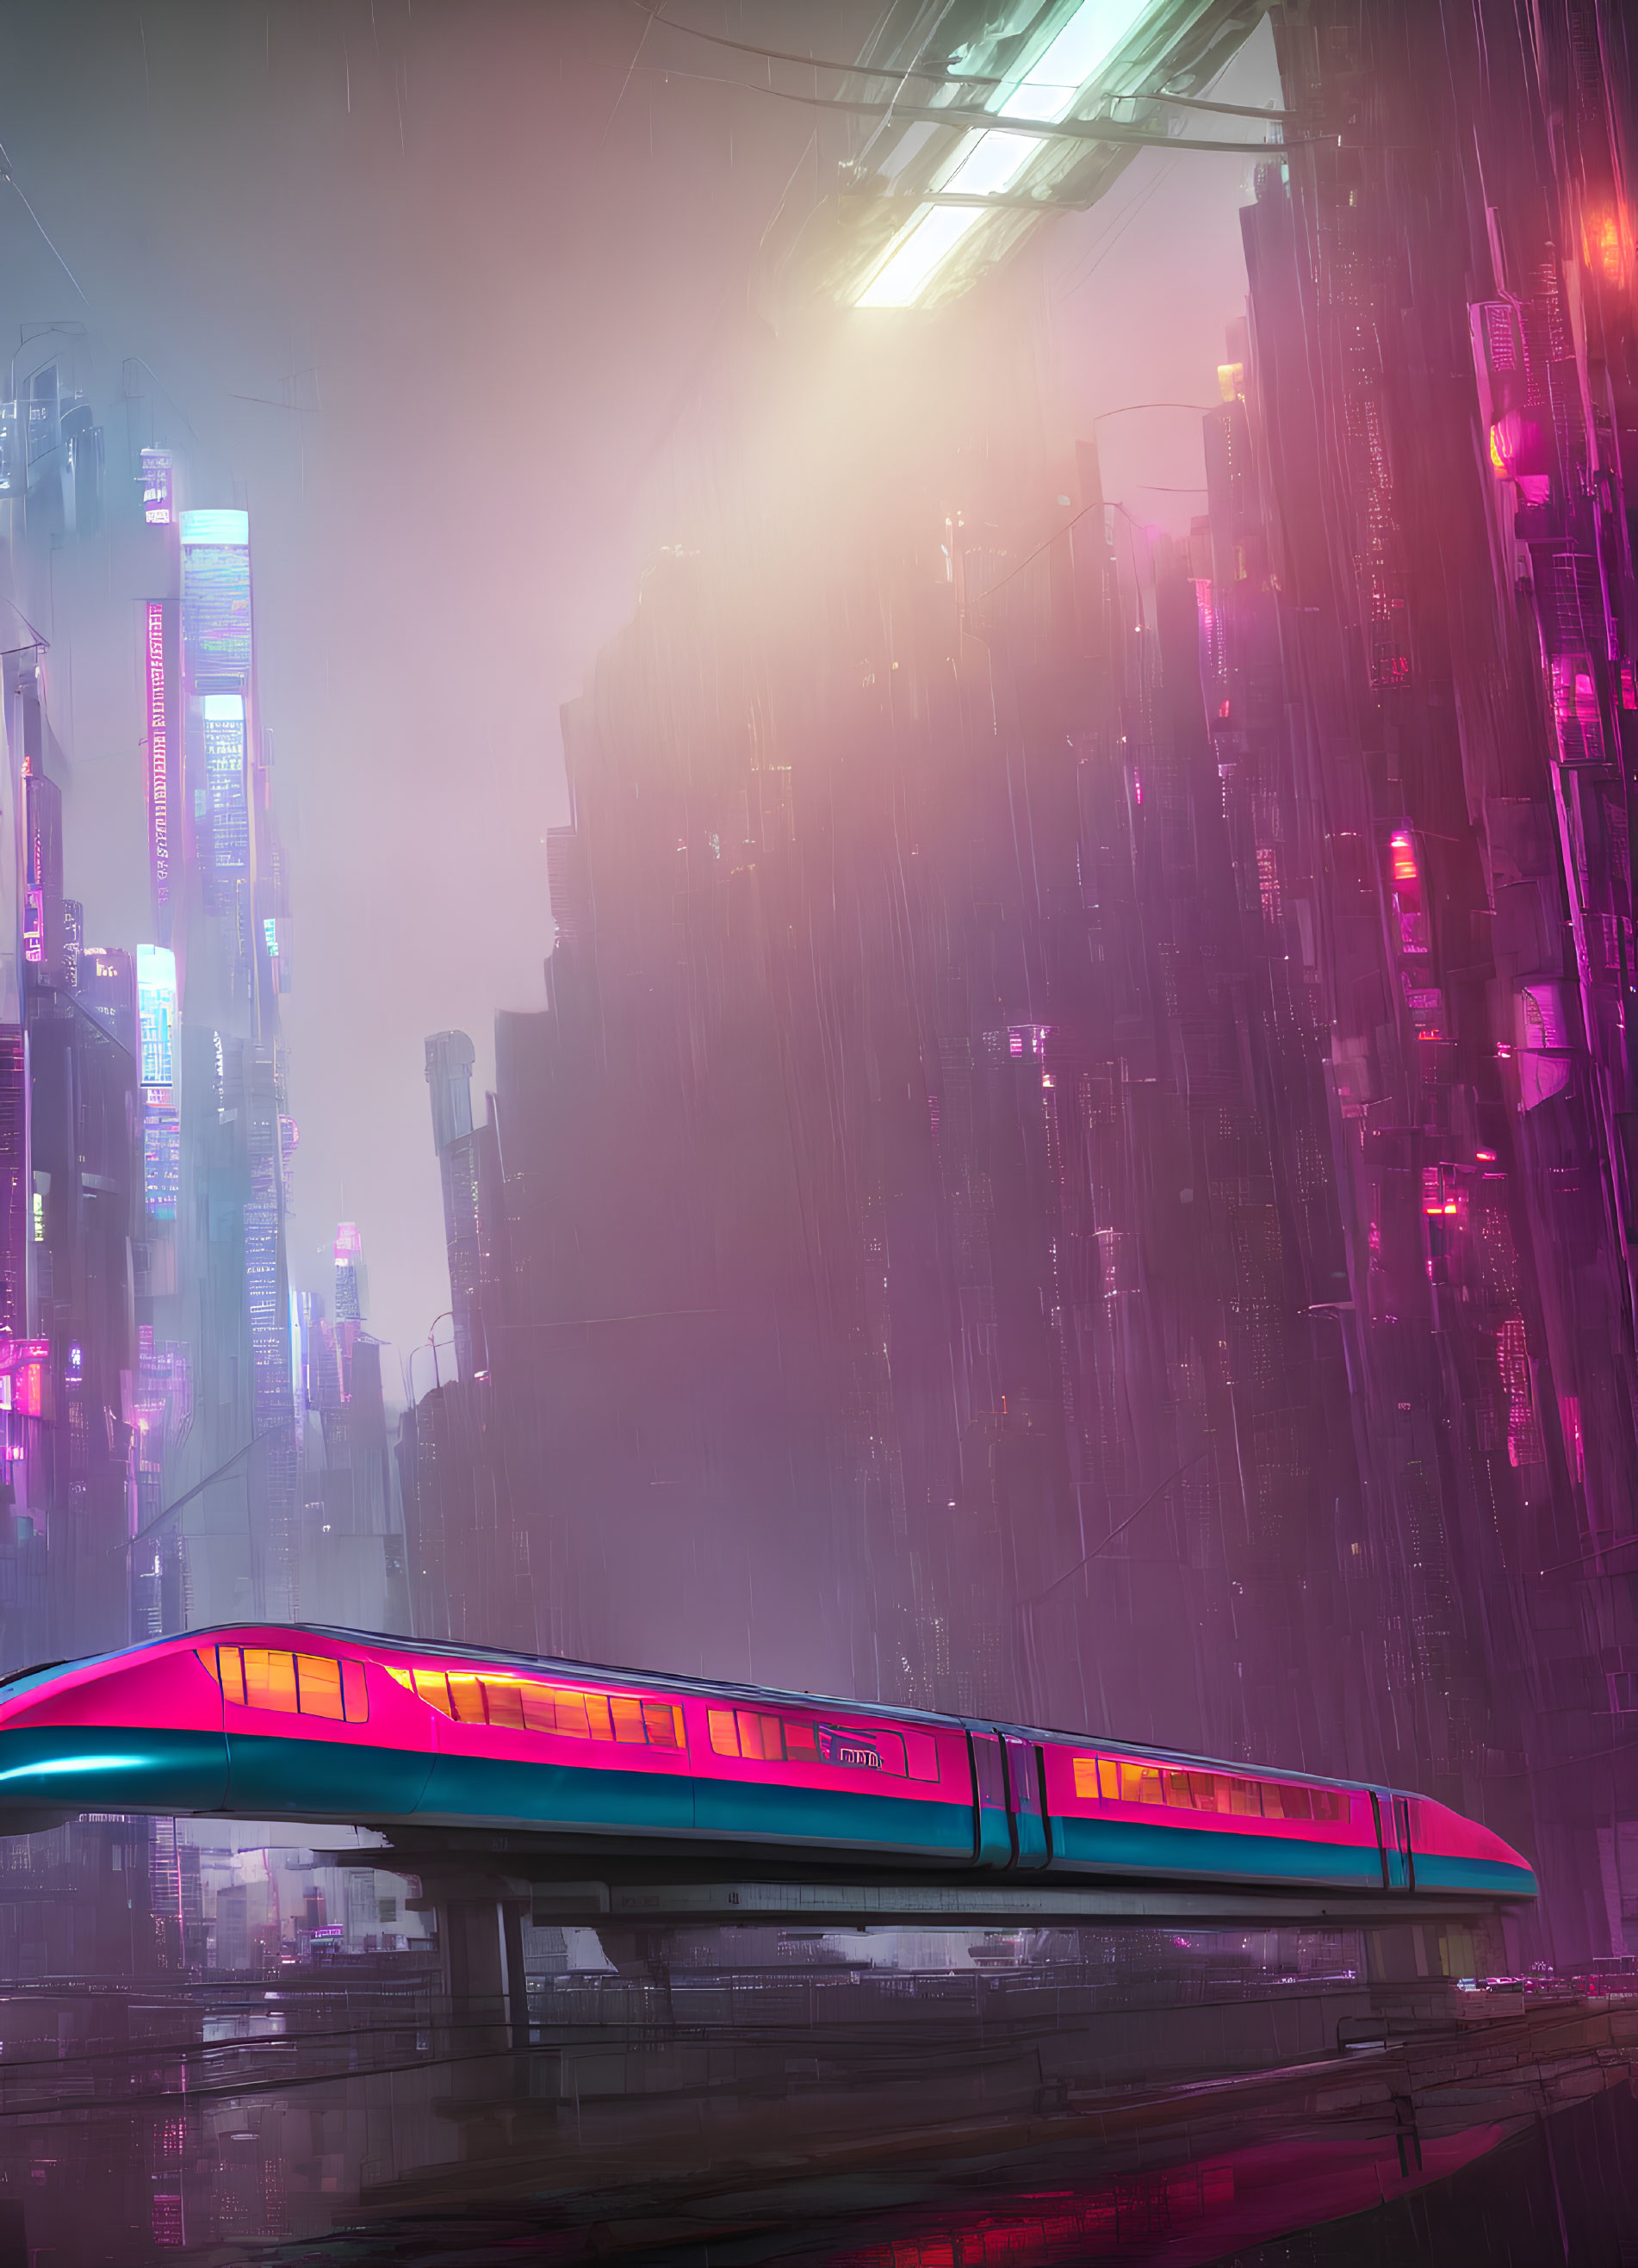 Futuristic maglev train in neon-lit cityscape during heavy rainfall